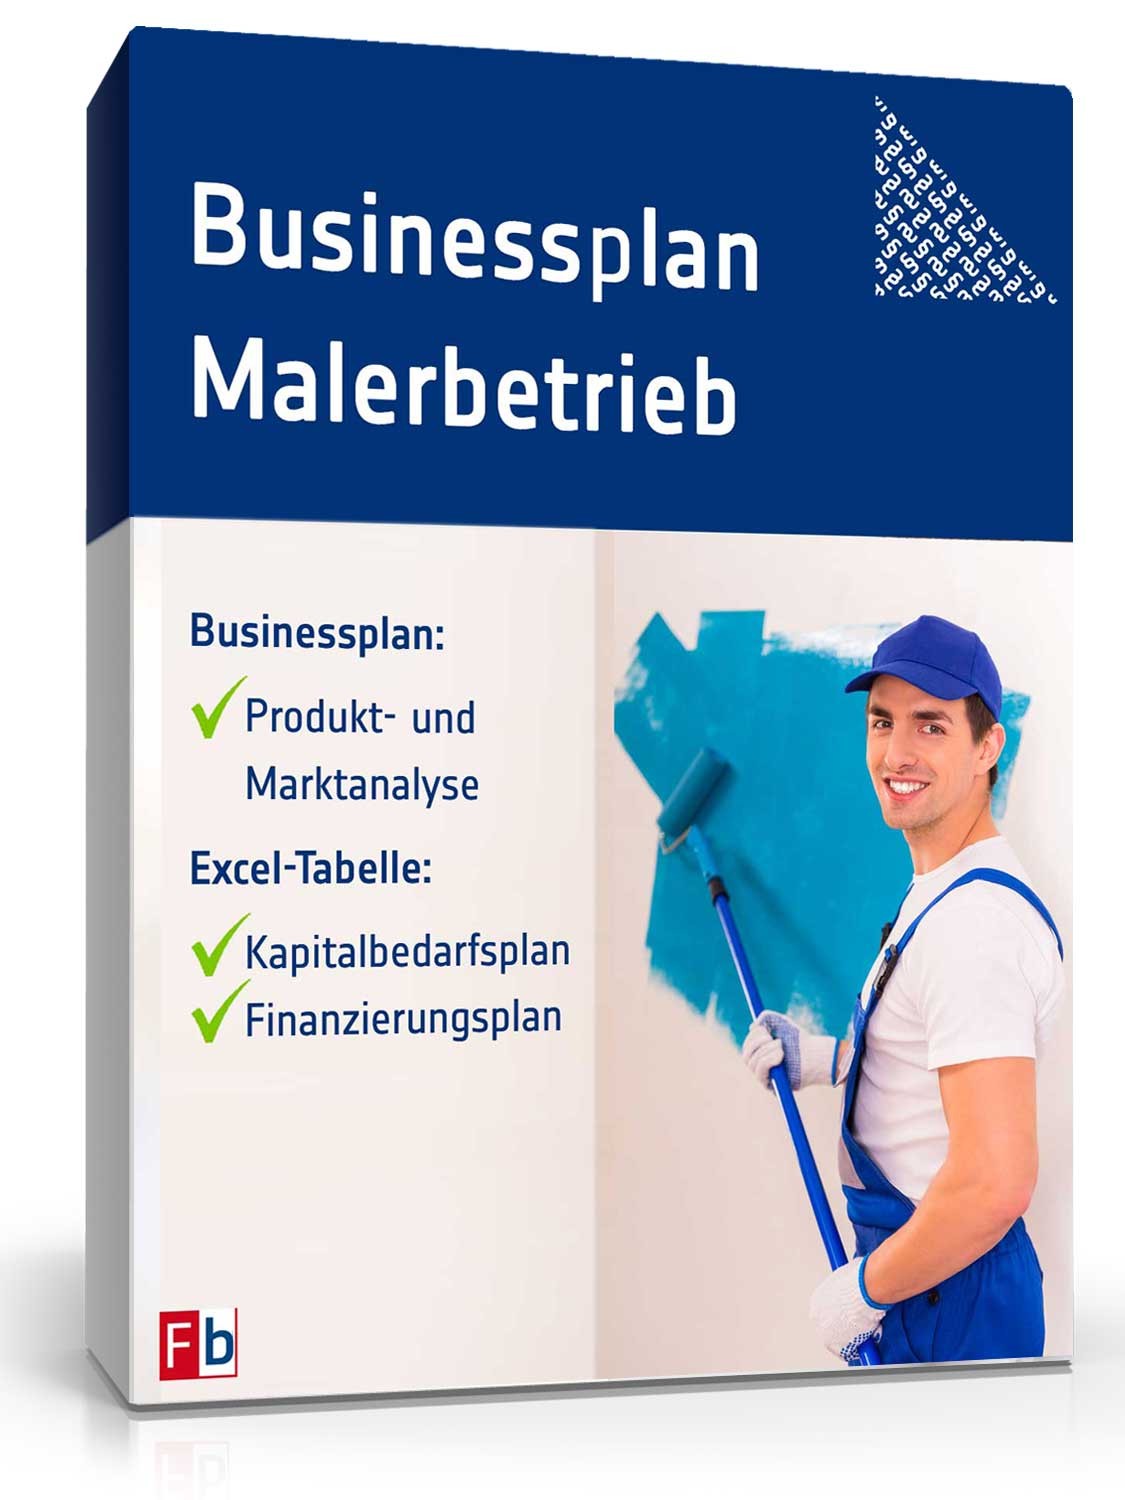 Hauptbild des Produkts: Businessplan Malerbetrieb